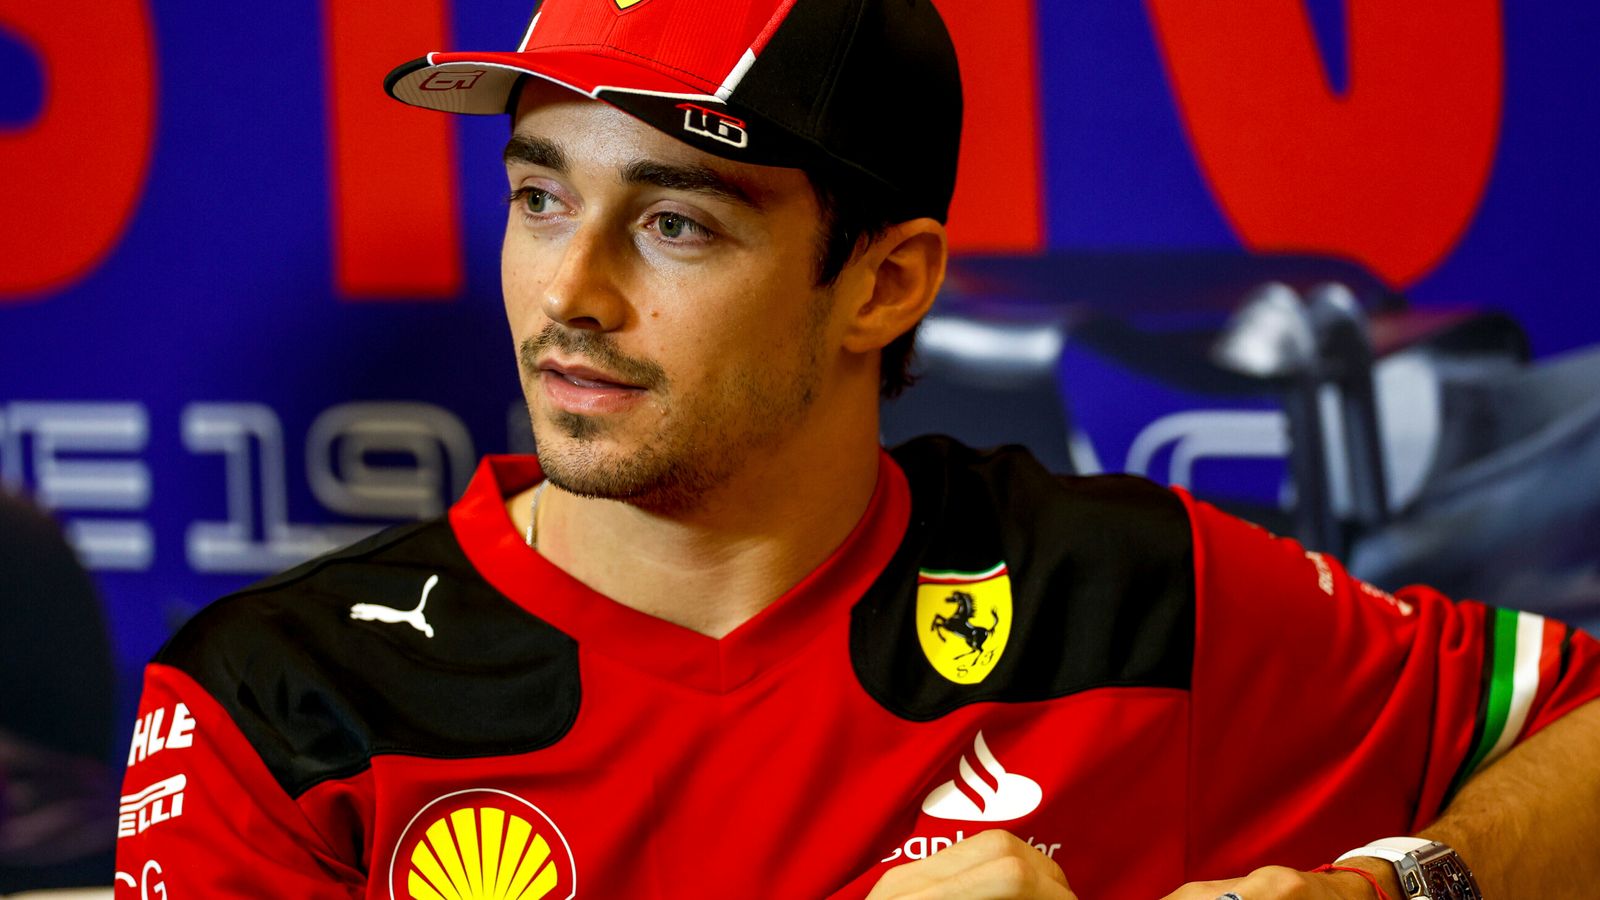 Leclerc signs Ferrari contract extension